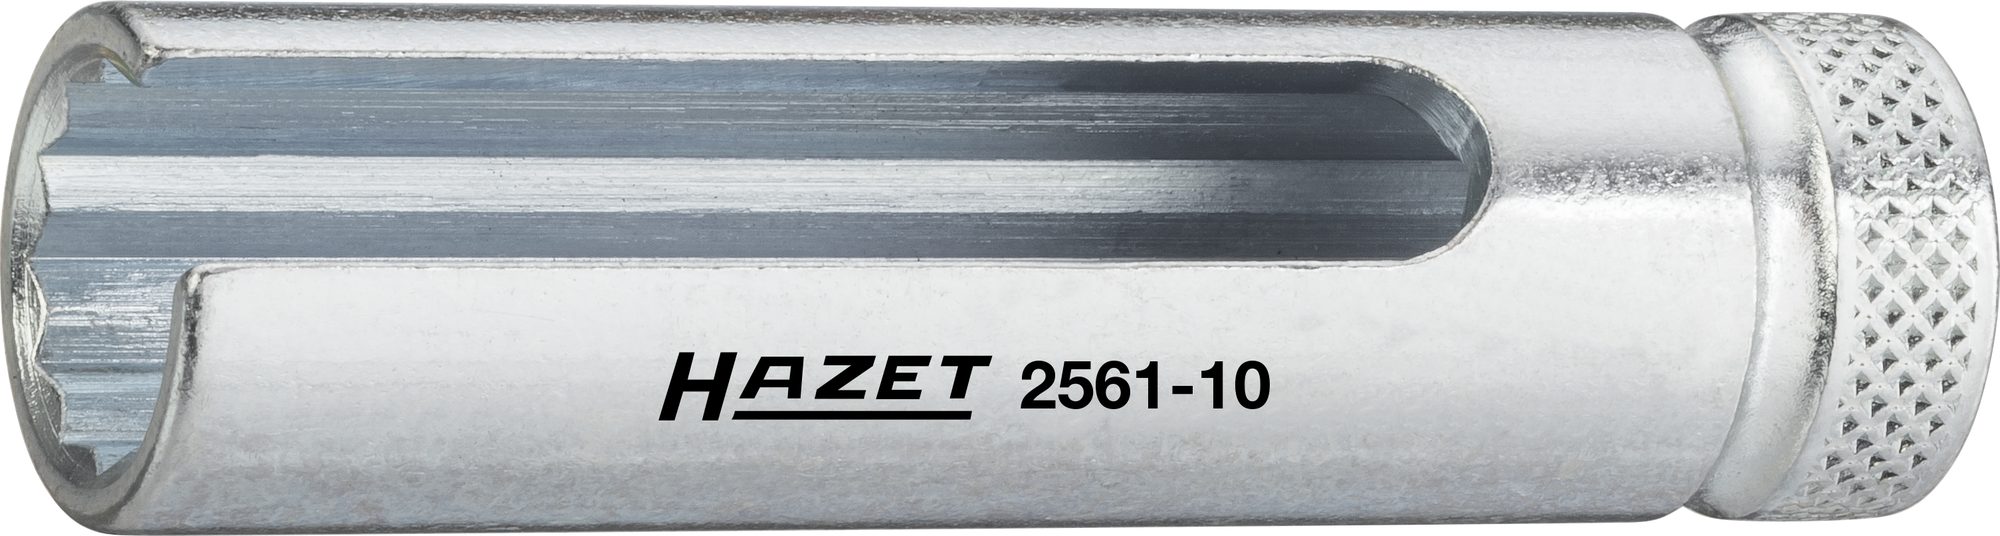 Hazet 2561-10 Turbolader Dopsleutel - 10mm - 1/4''